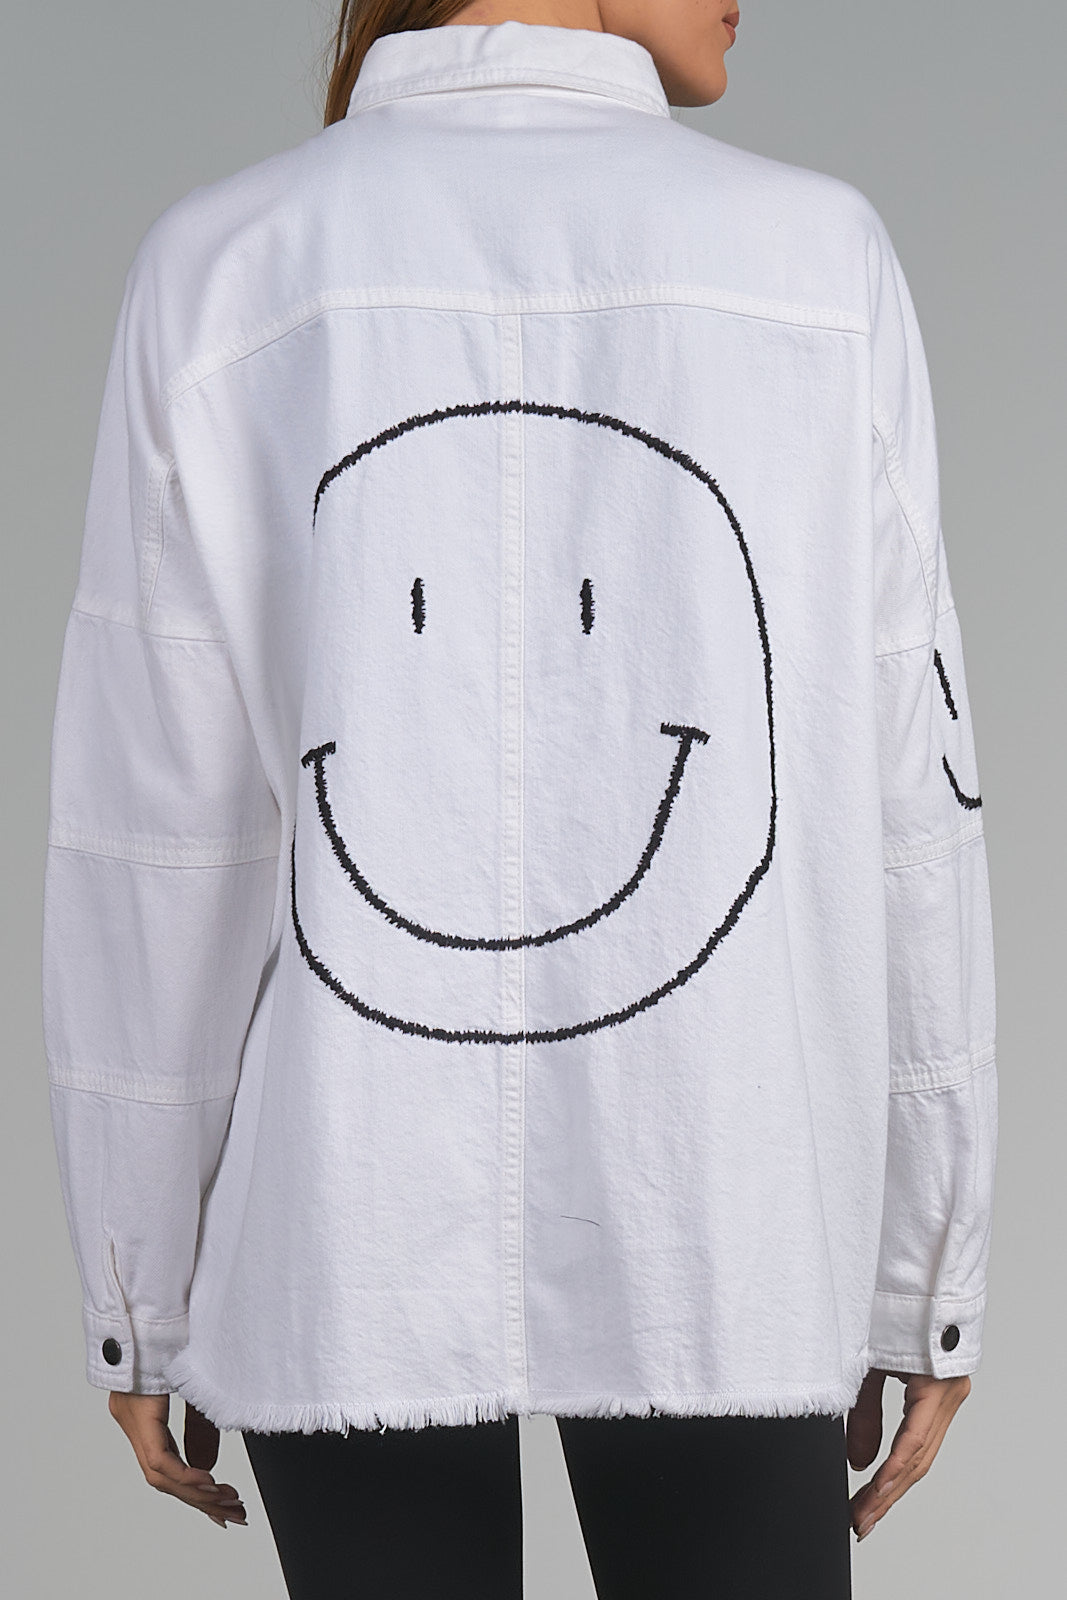 Elan Smiley Face Dolly Jacket-White